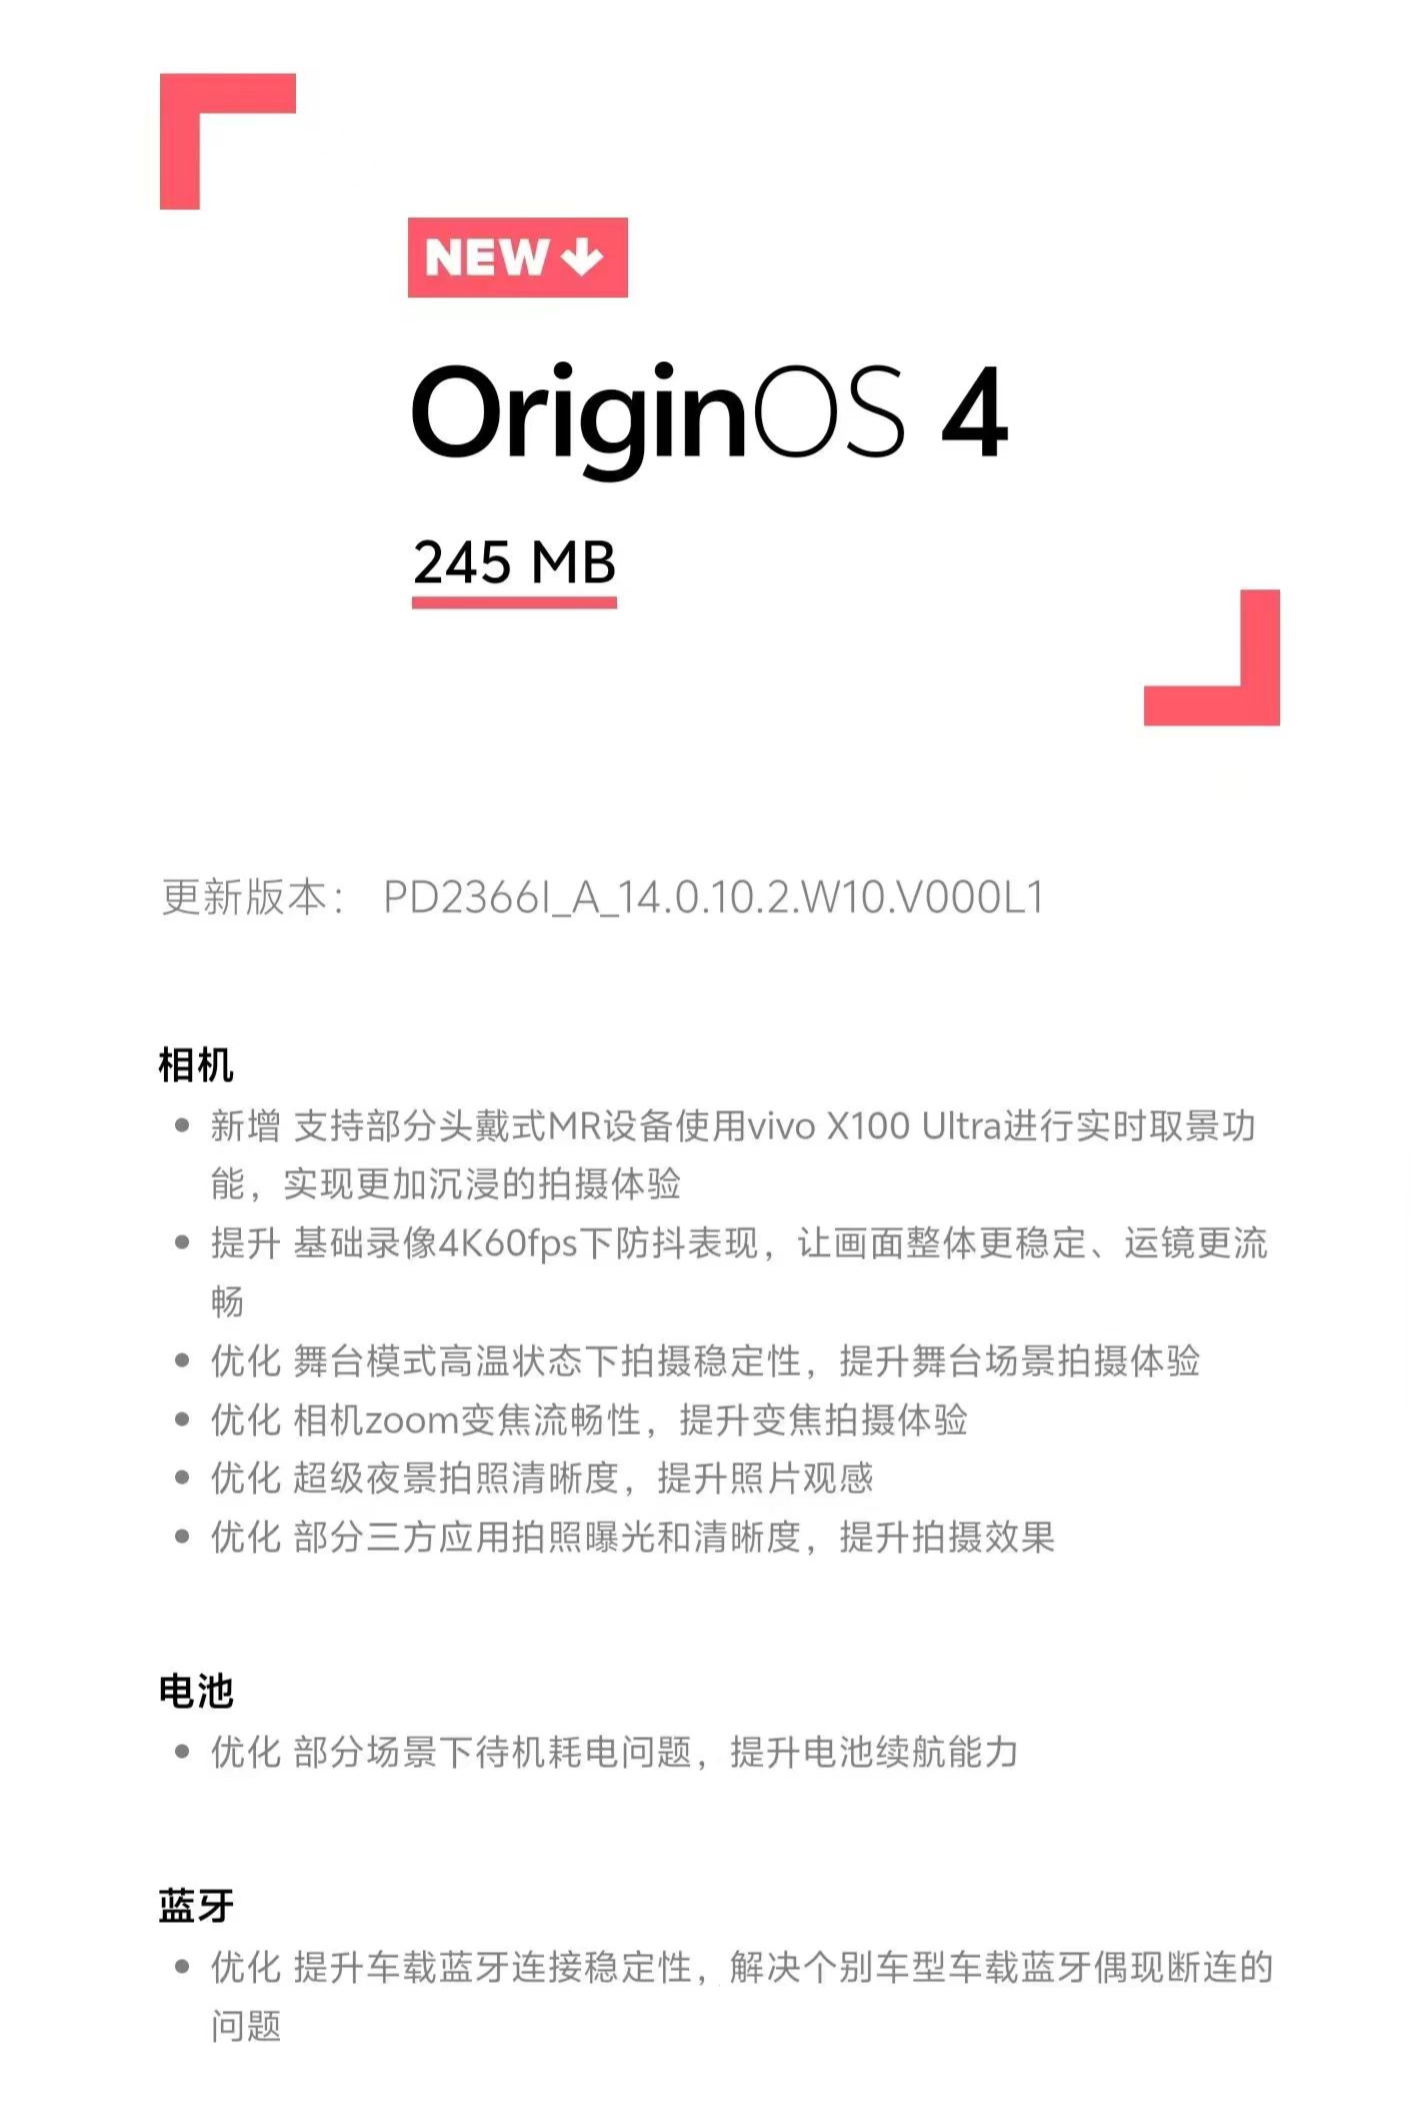 vivo X100 Ultra 手机获推 OriginOS 4 14.0.10.2：支持部分 MR 设备联动实时取景